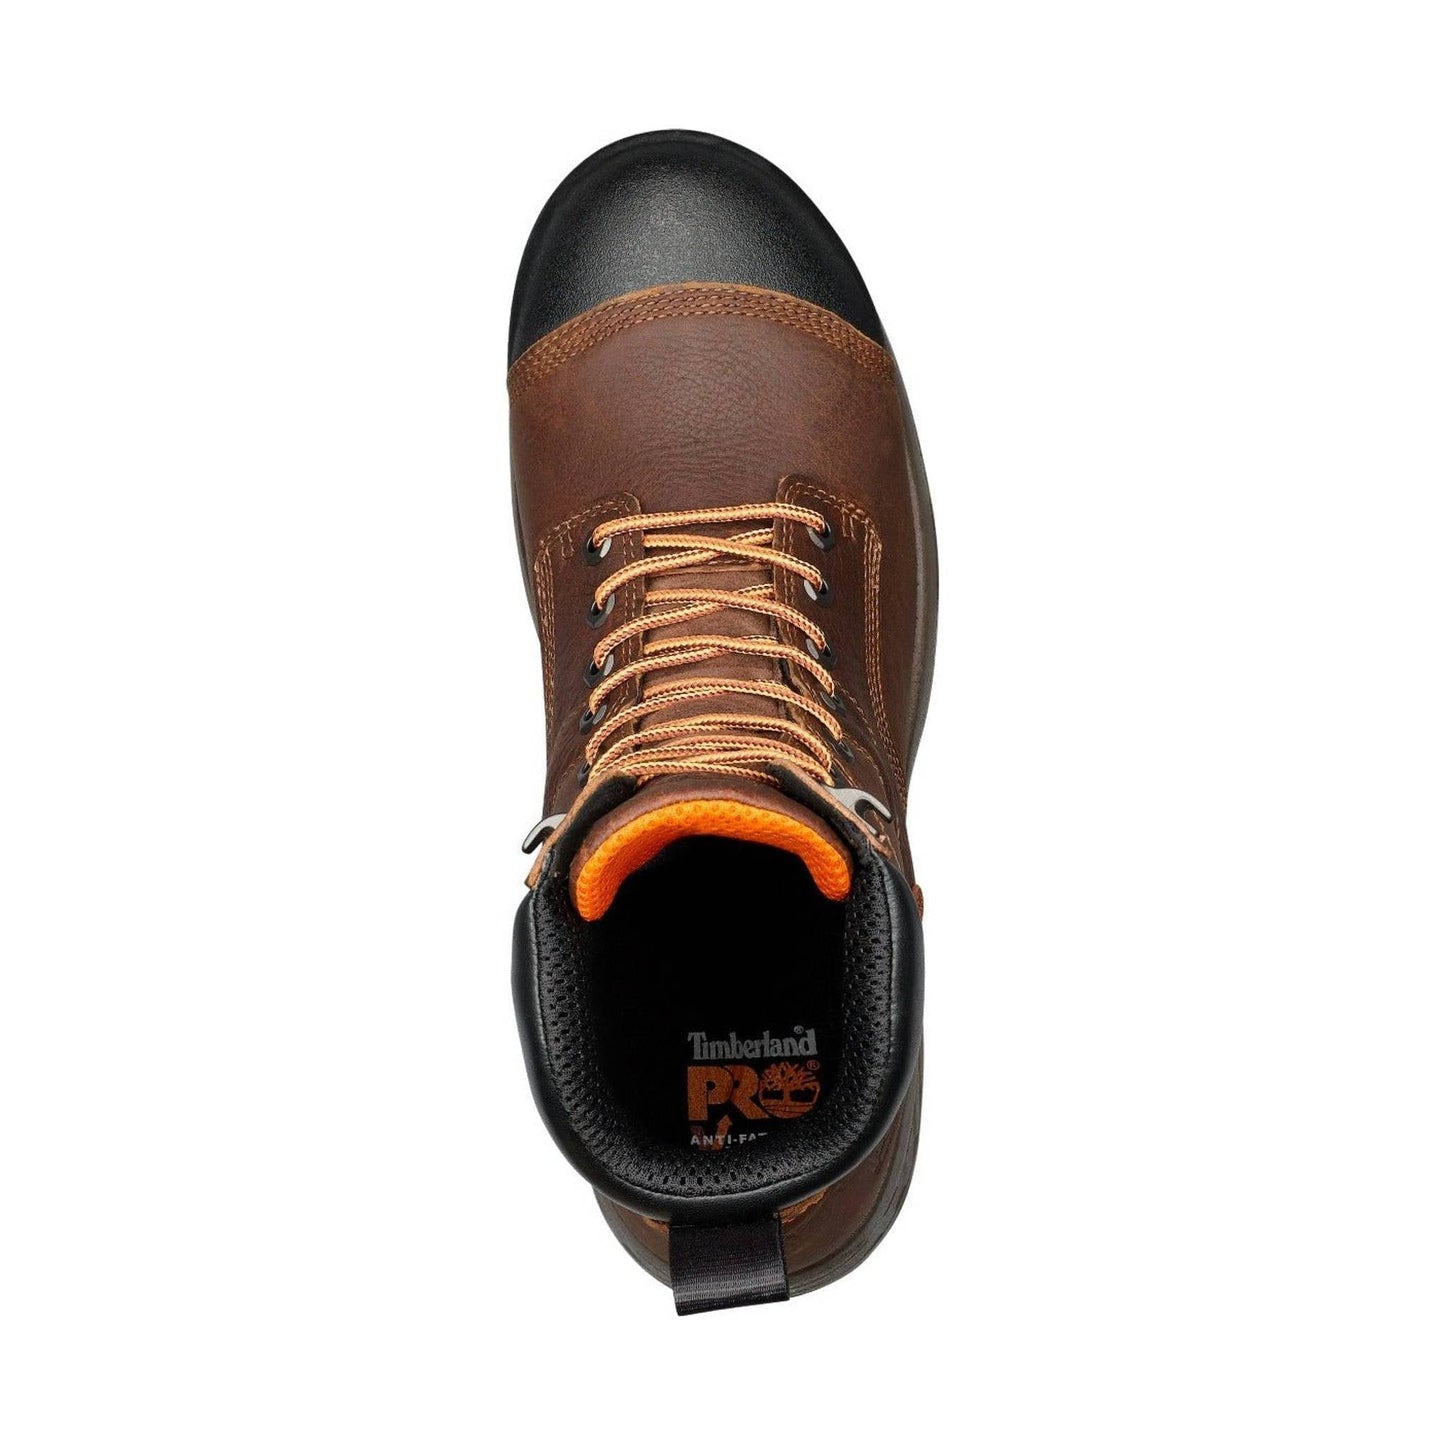 Timberland Pro Men's Helix HD 8 Inch Waterproof Composite Toe Work Boot - Brown